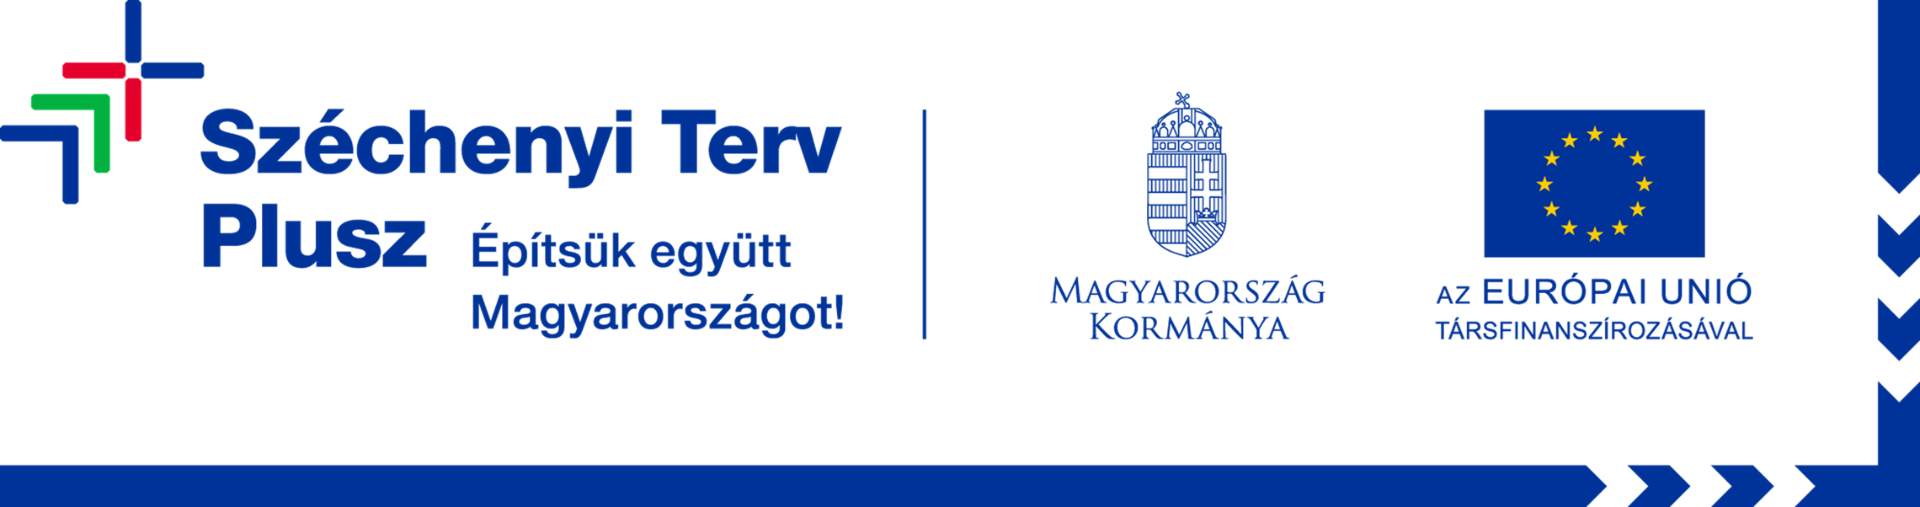 Szechenyi terv plusz logo 1